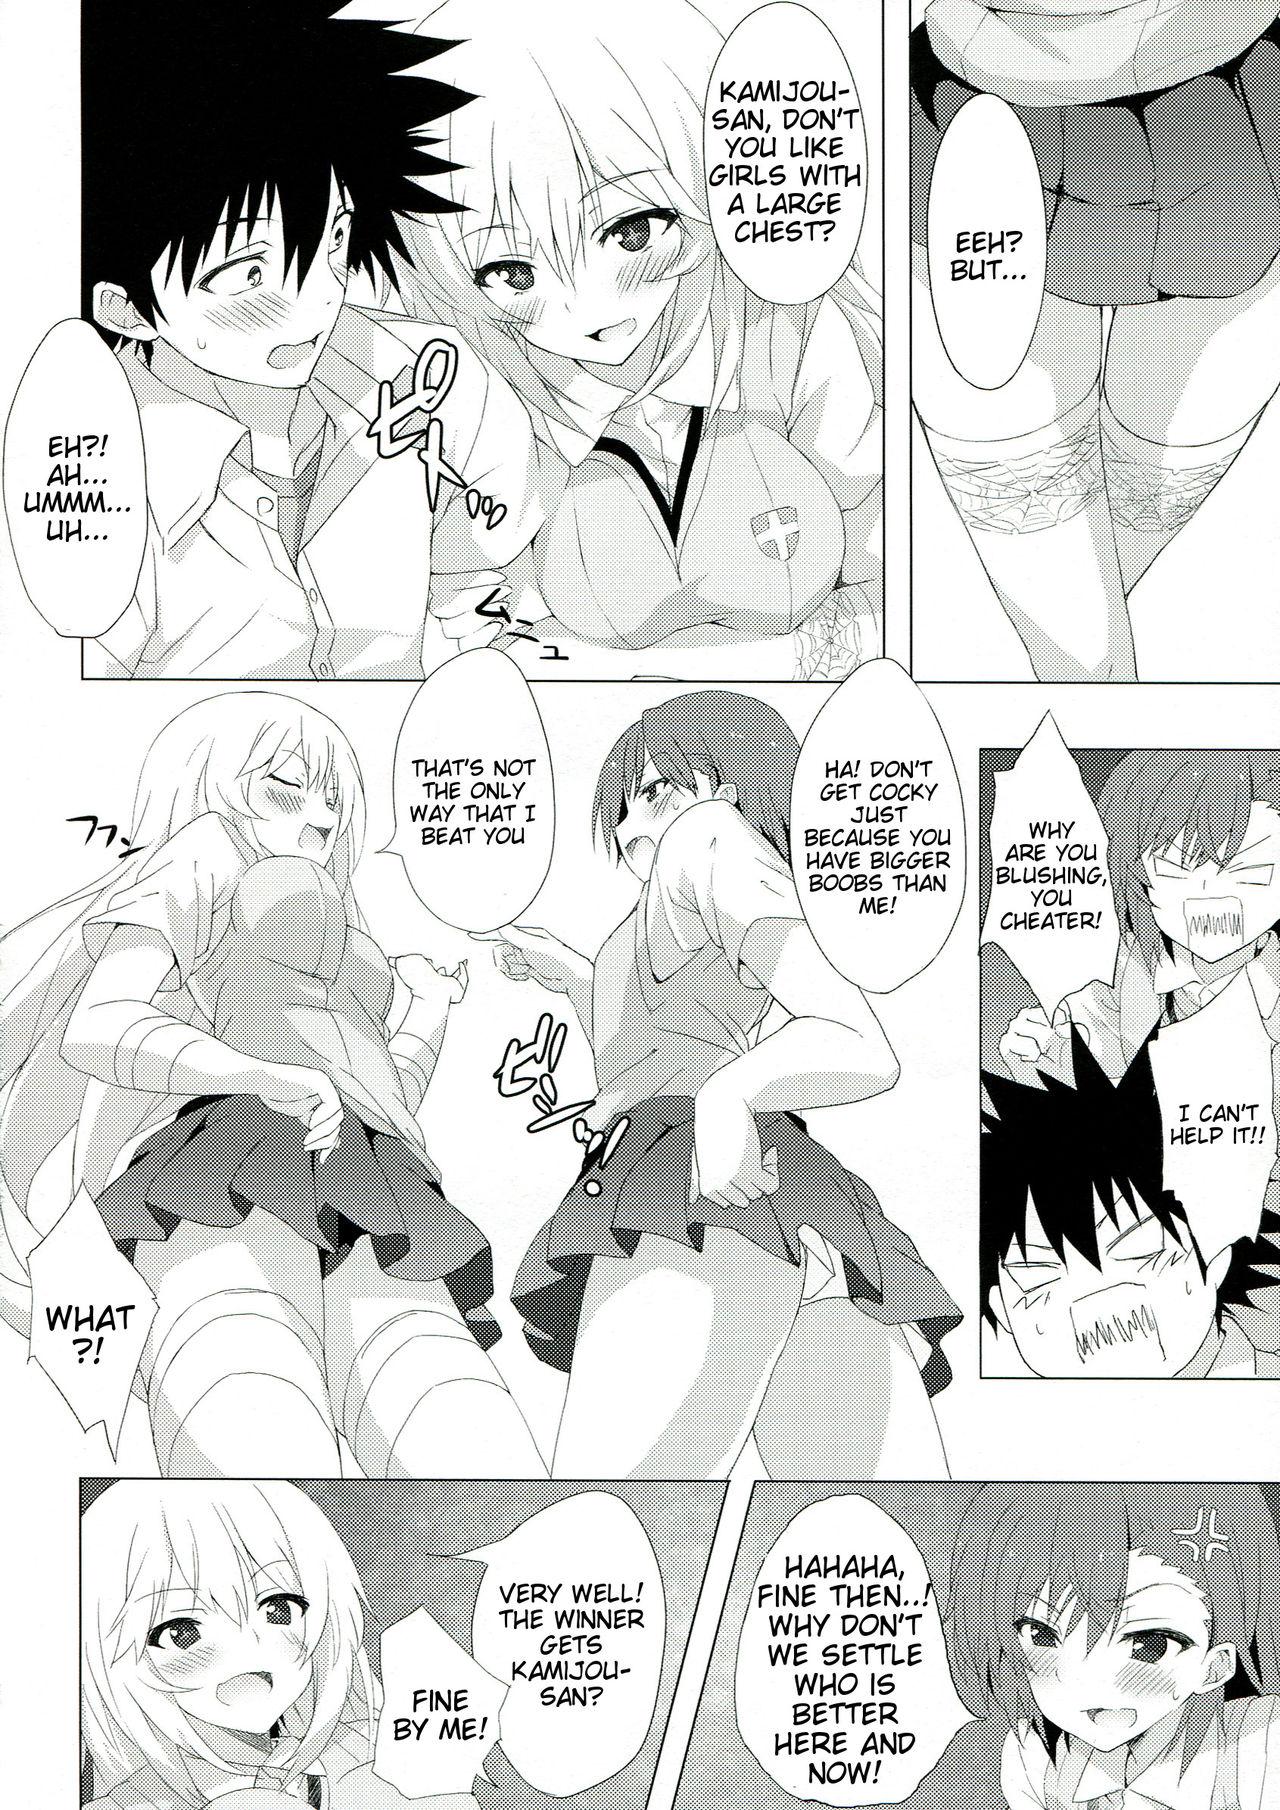 Woman BiriBiri Shock! - Toaru kagaku no railgun 3some - Page 5